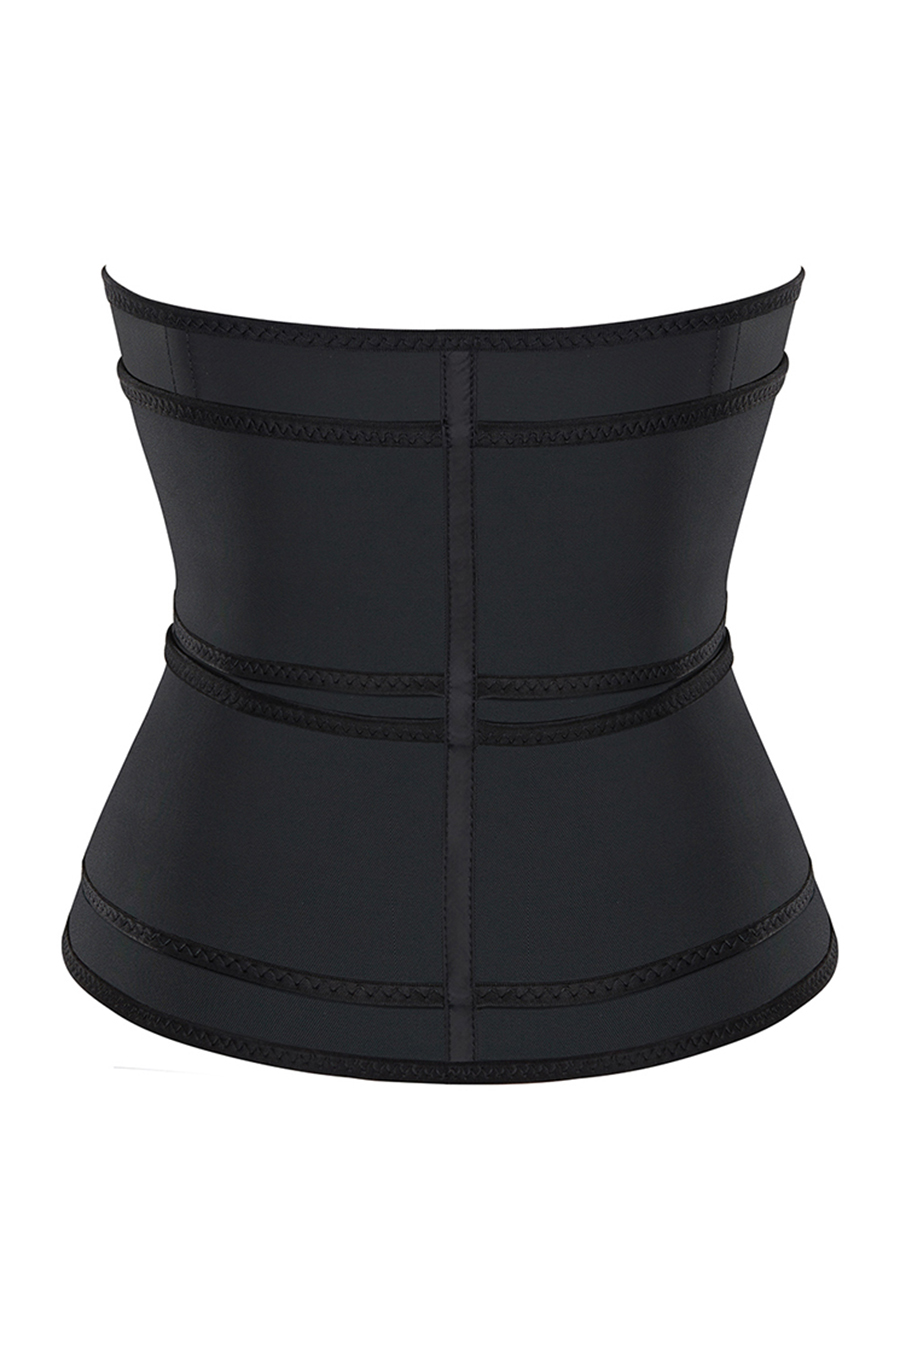 Waist trainer bälte - Latex Grain - Make Secrets lyxiga underkläder